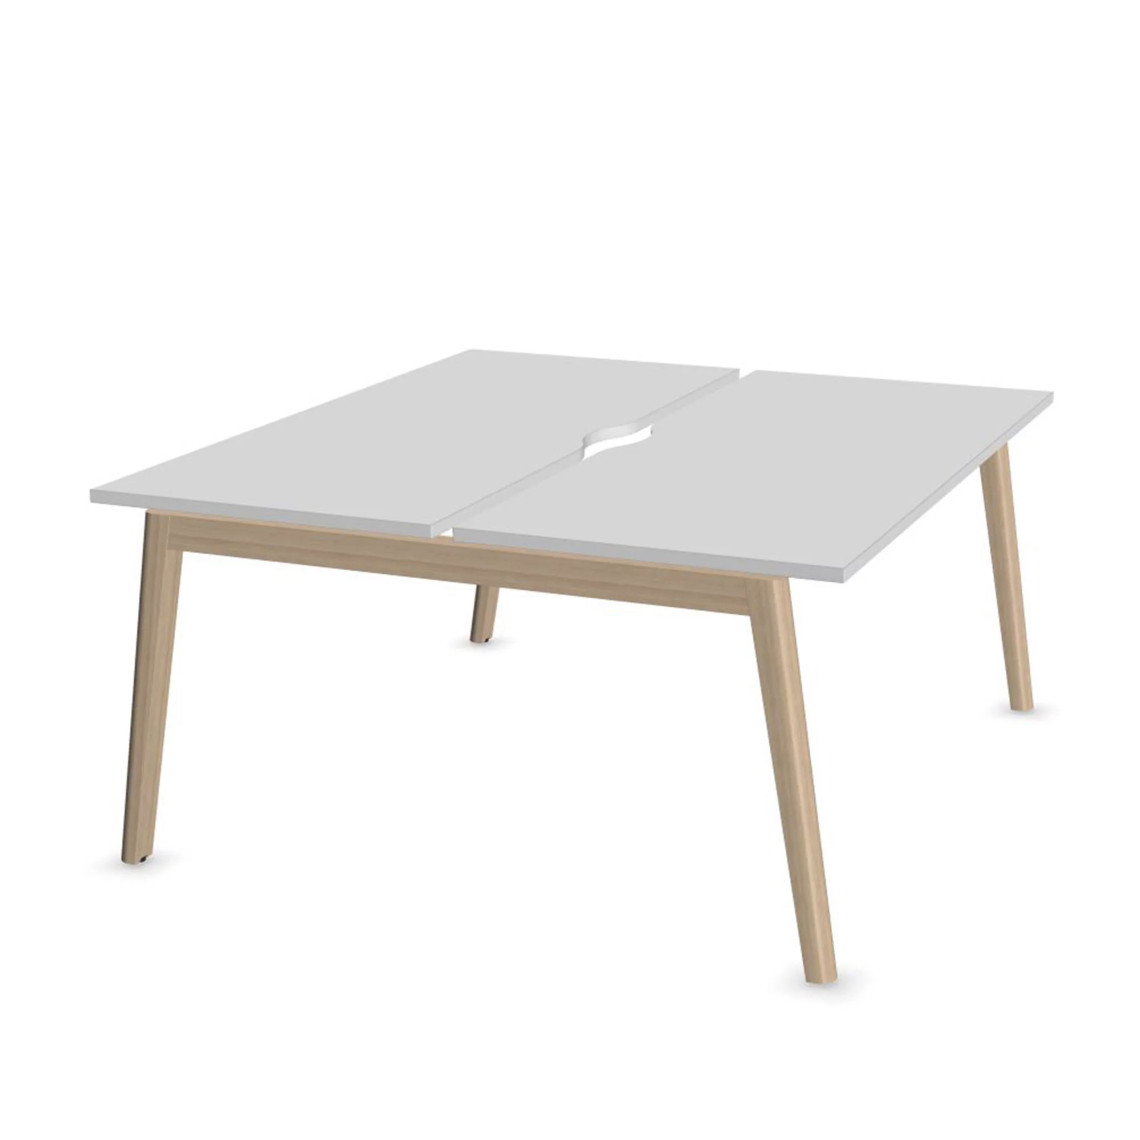 Dobbelt skrivebord Nova Wood, Design Ash Stained Light Grey / White, Bredde 120 cm